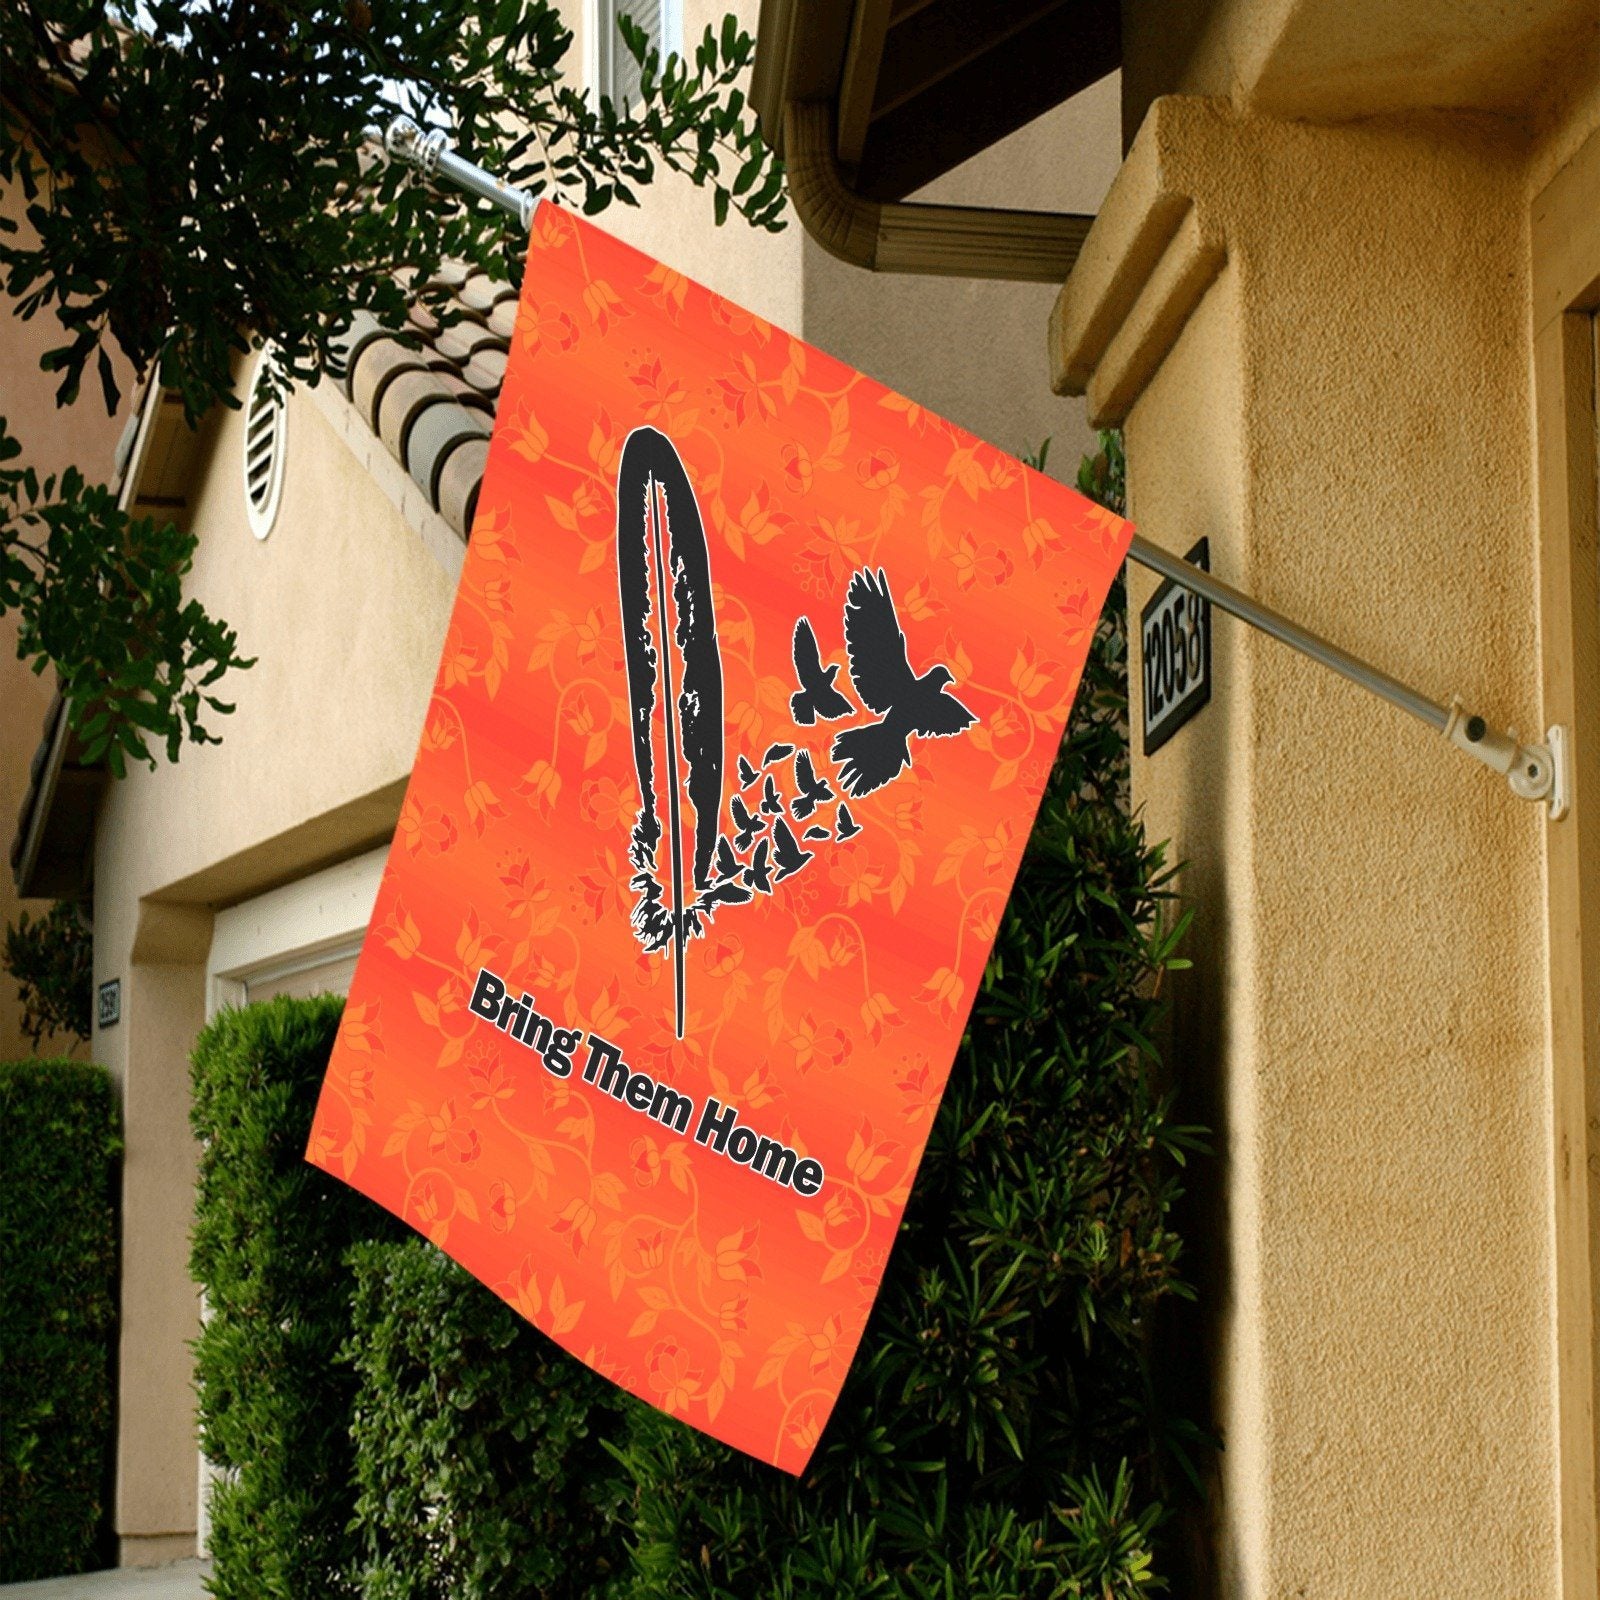 Orange Days Orange -Bring Them Home Garden Flag 28''x40'' (Two Sides Printing) Garden Flag 28‘’x40‘’ (Two Sides) e-joyer 